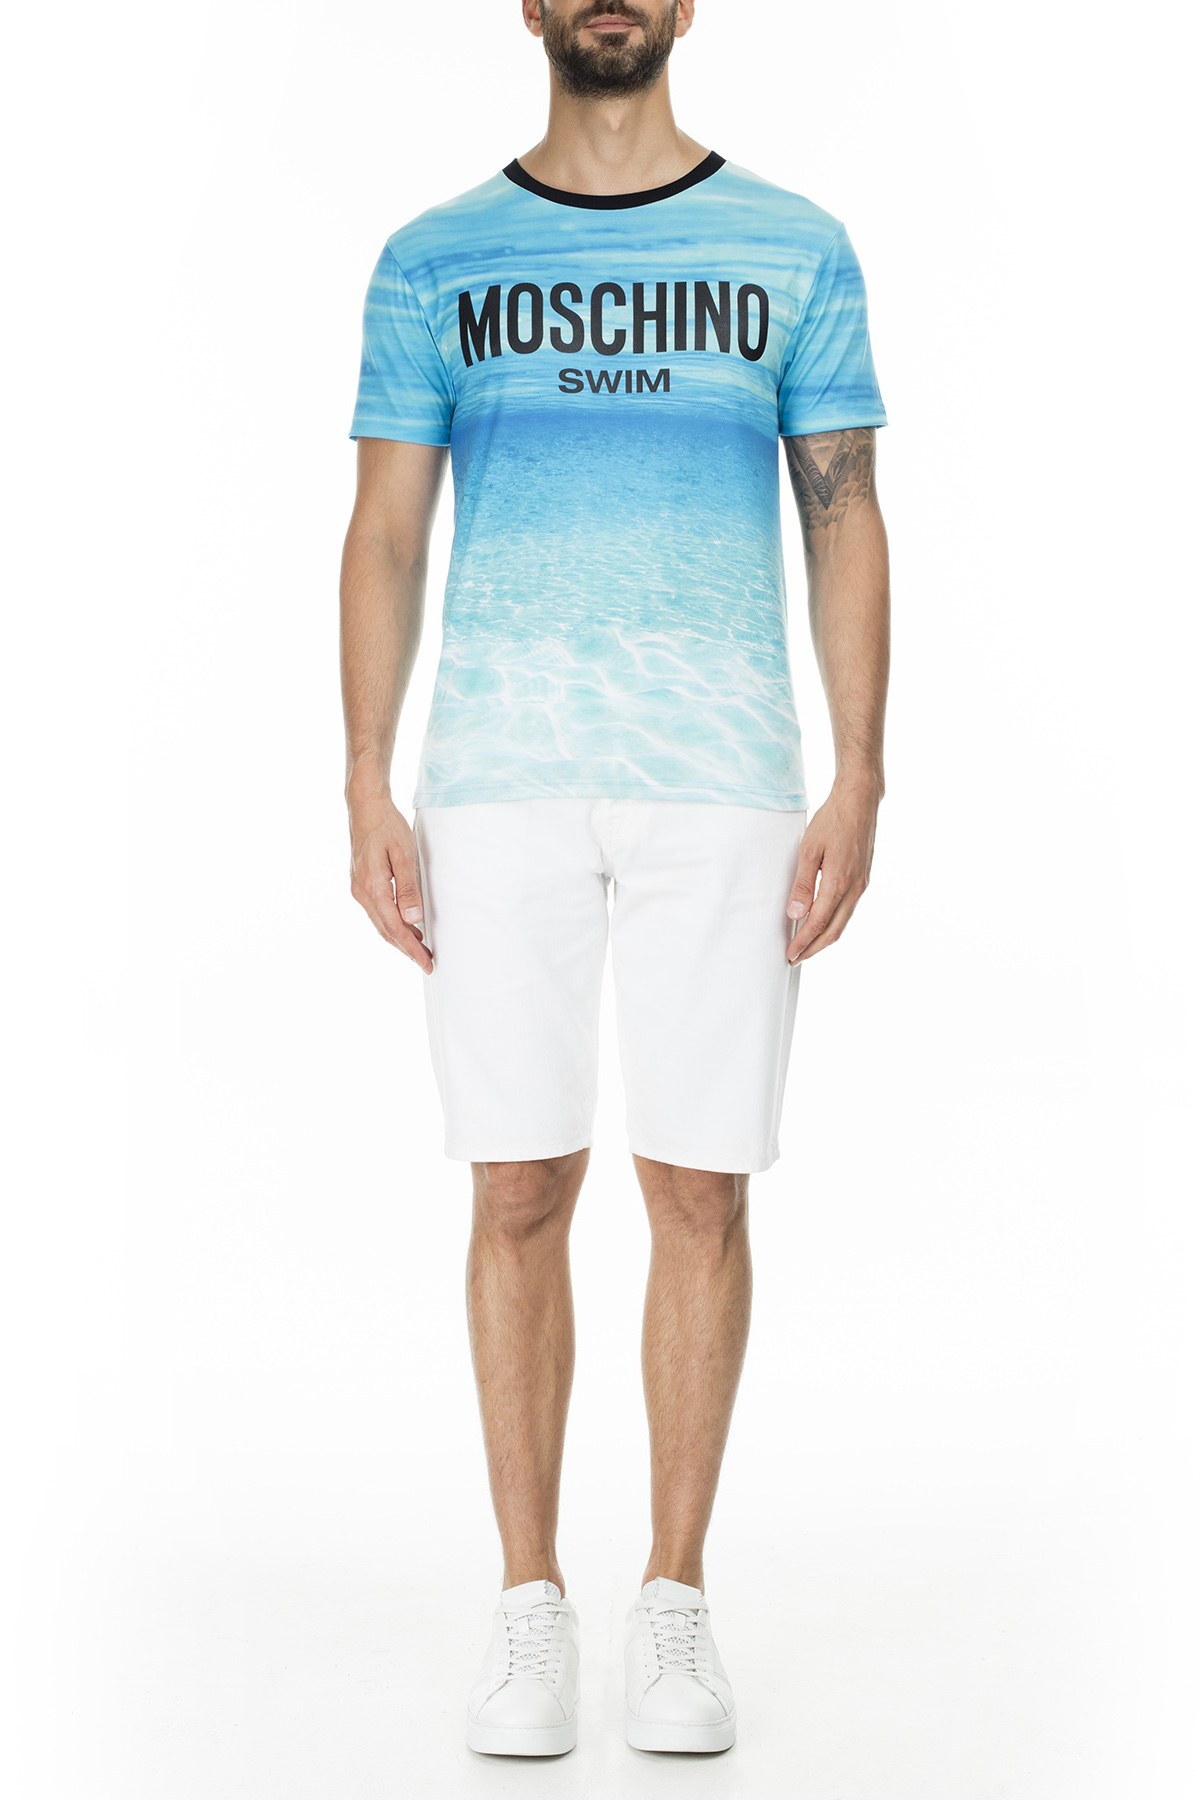 Moschino Erkek T Shirt A1901 2322 1888 MAVİ